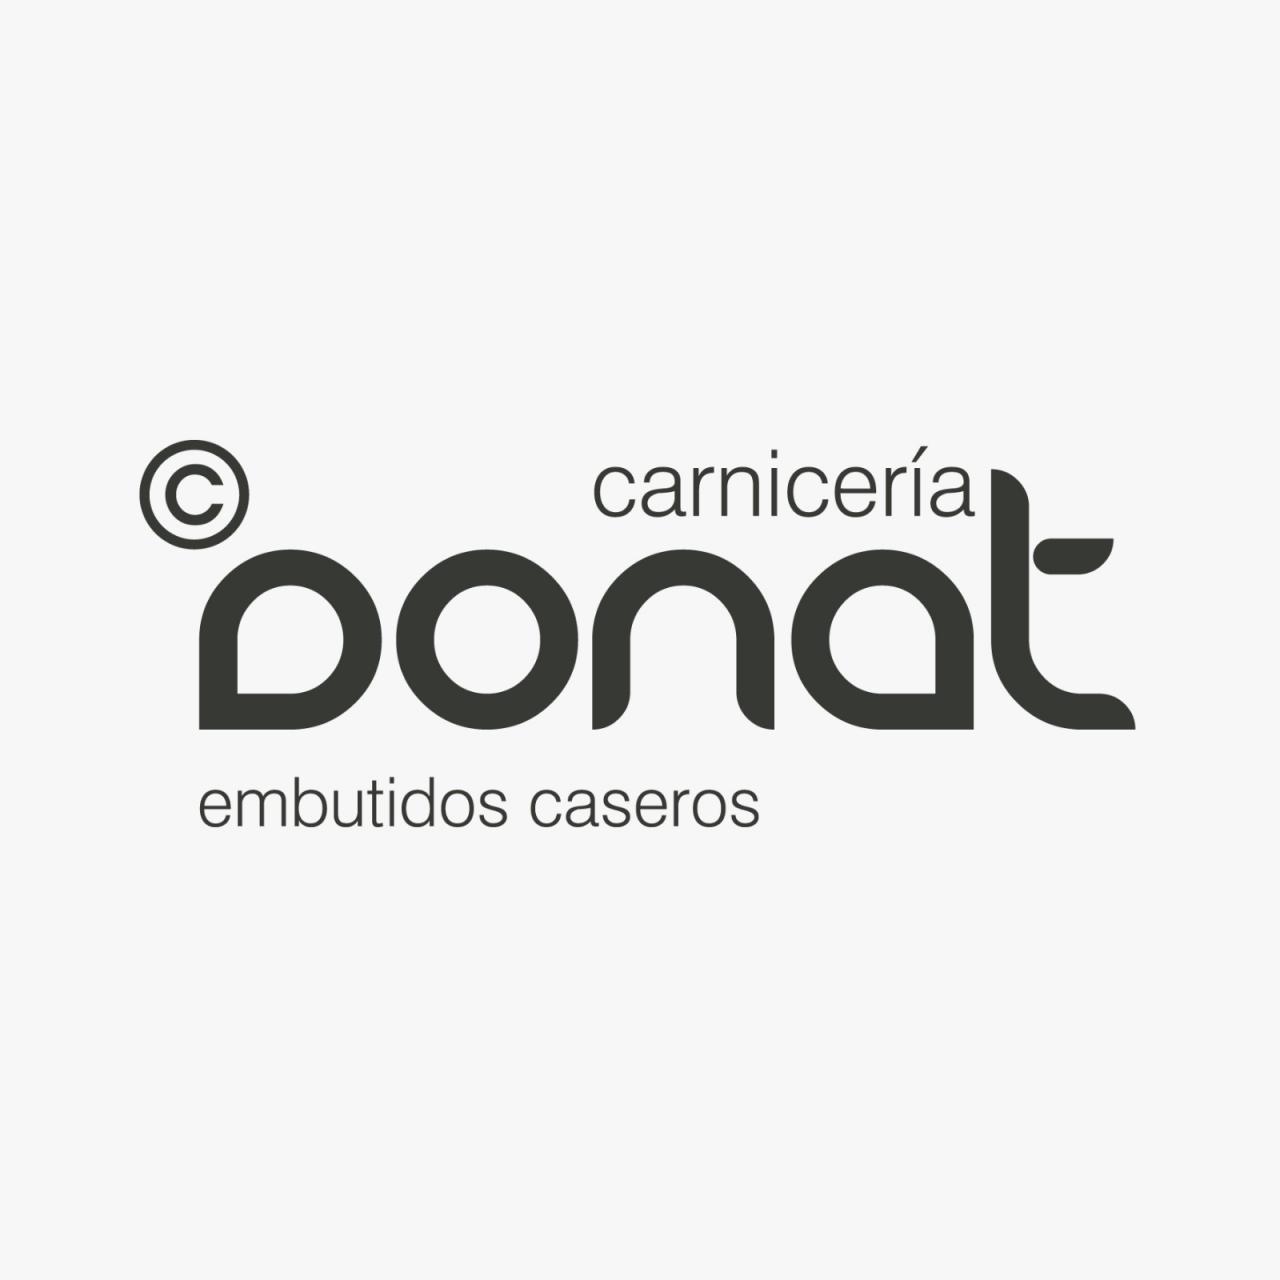 CARNICERIA DONAT